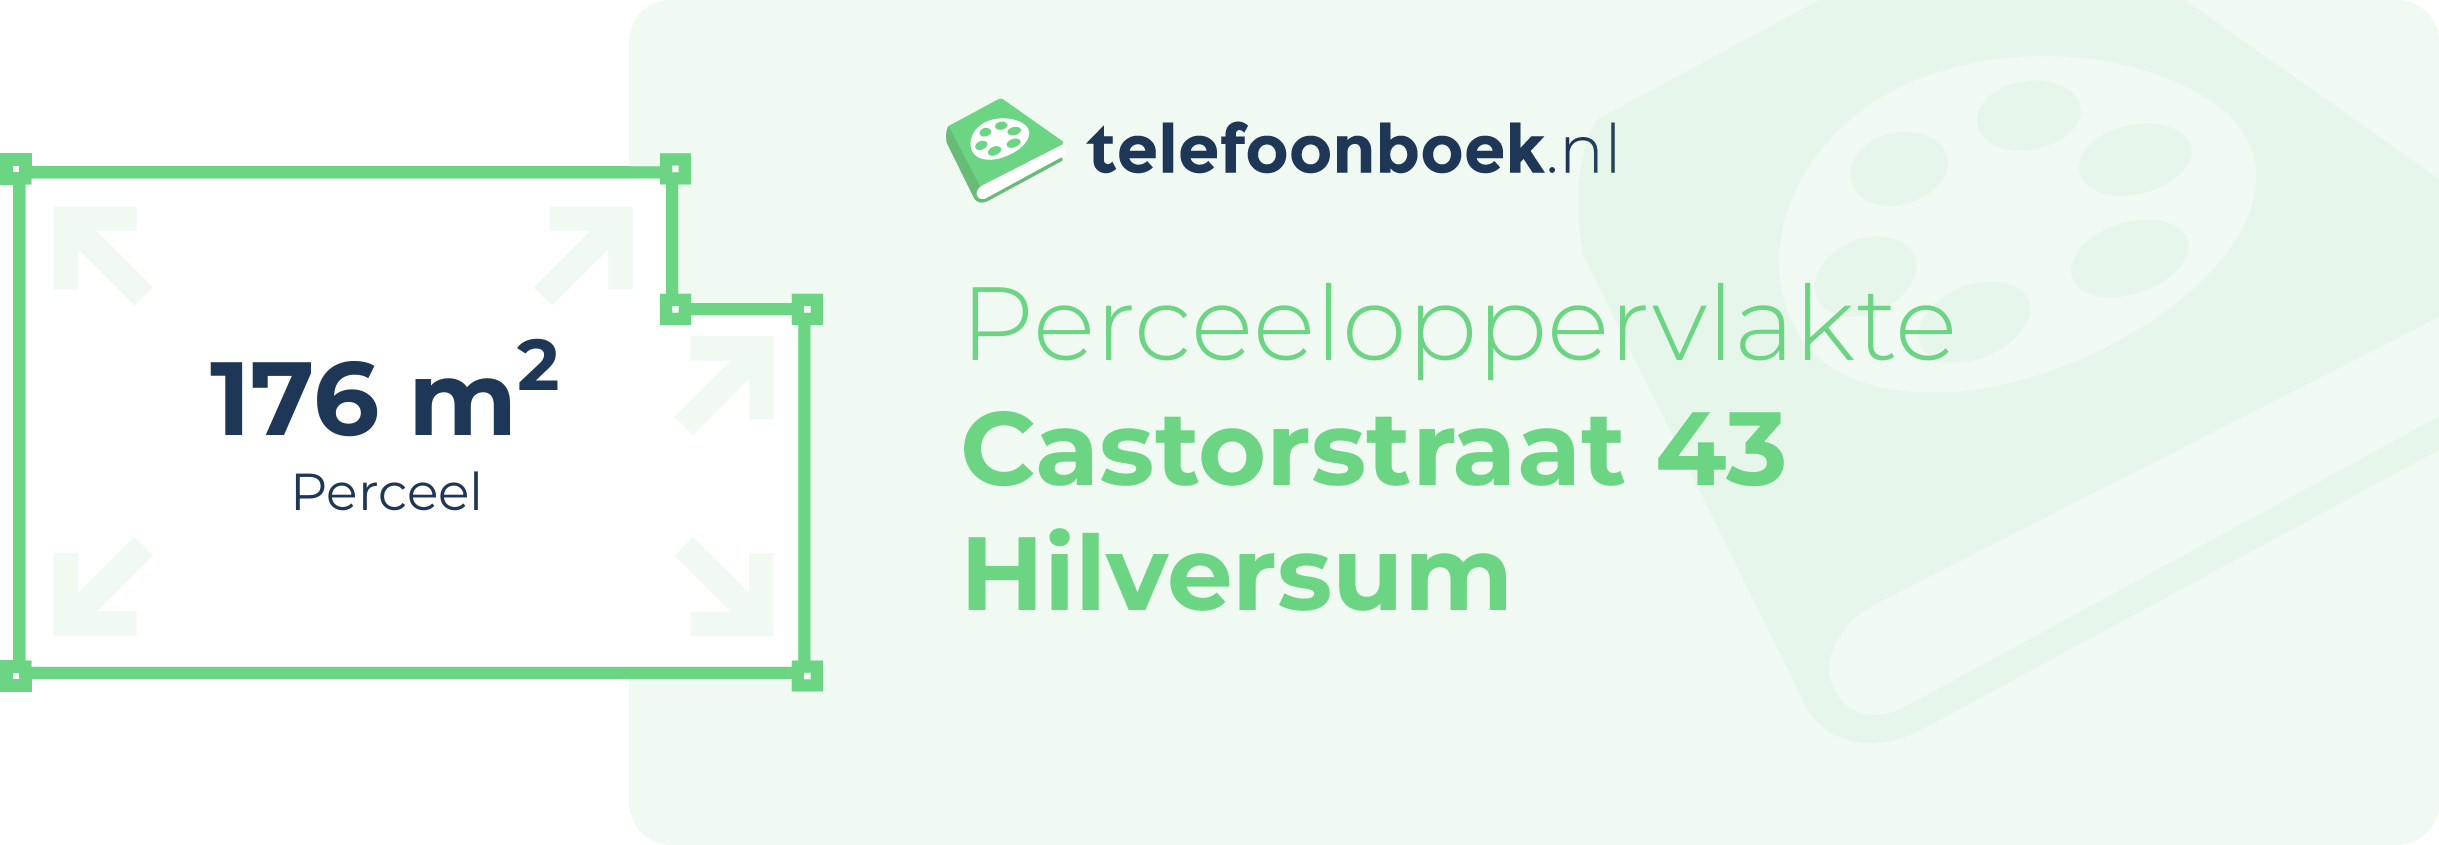 Perceeloppervlakte Castorstraat 43 Hilversum